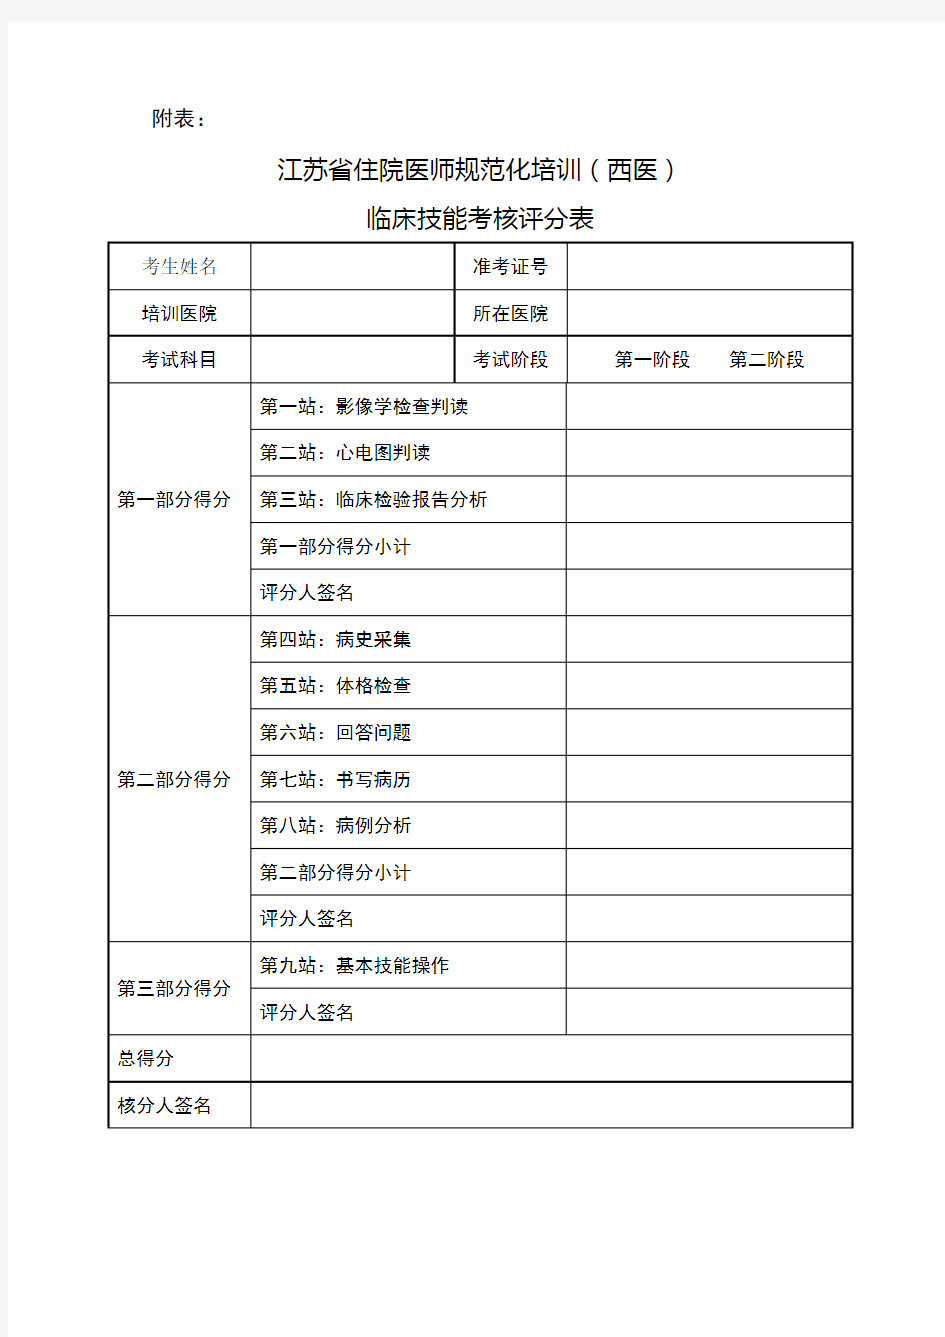 2 -3  江苏省住院医师规范化培训临床技能考核评分表